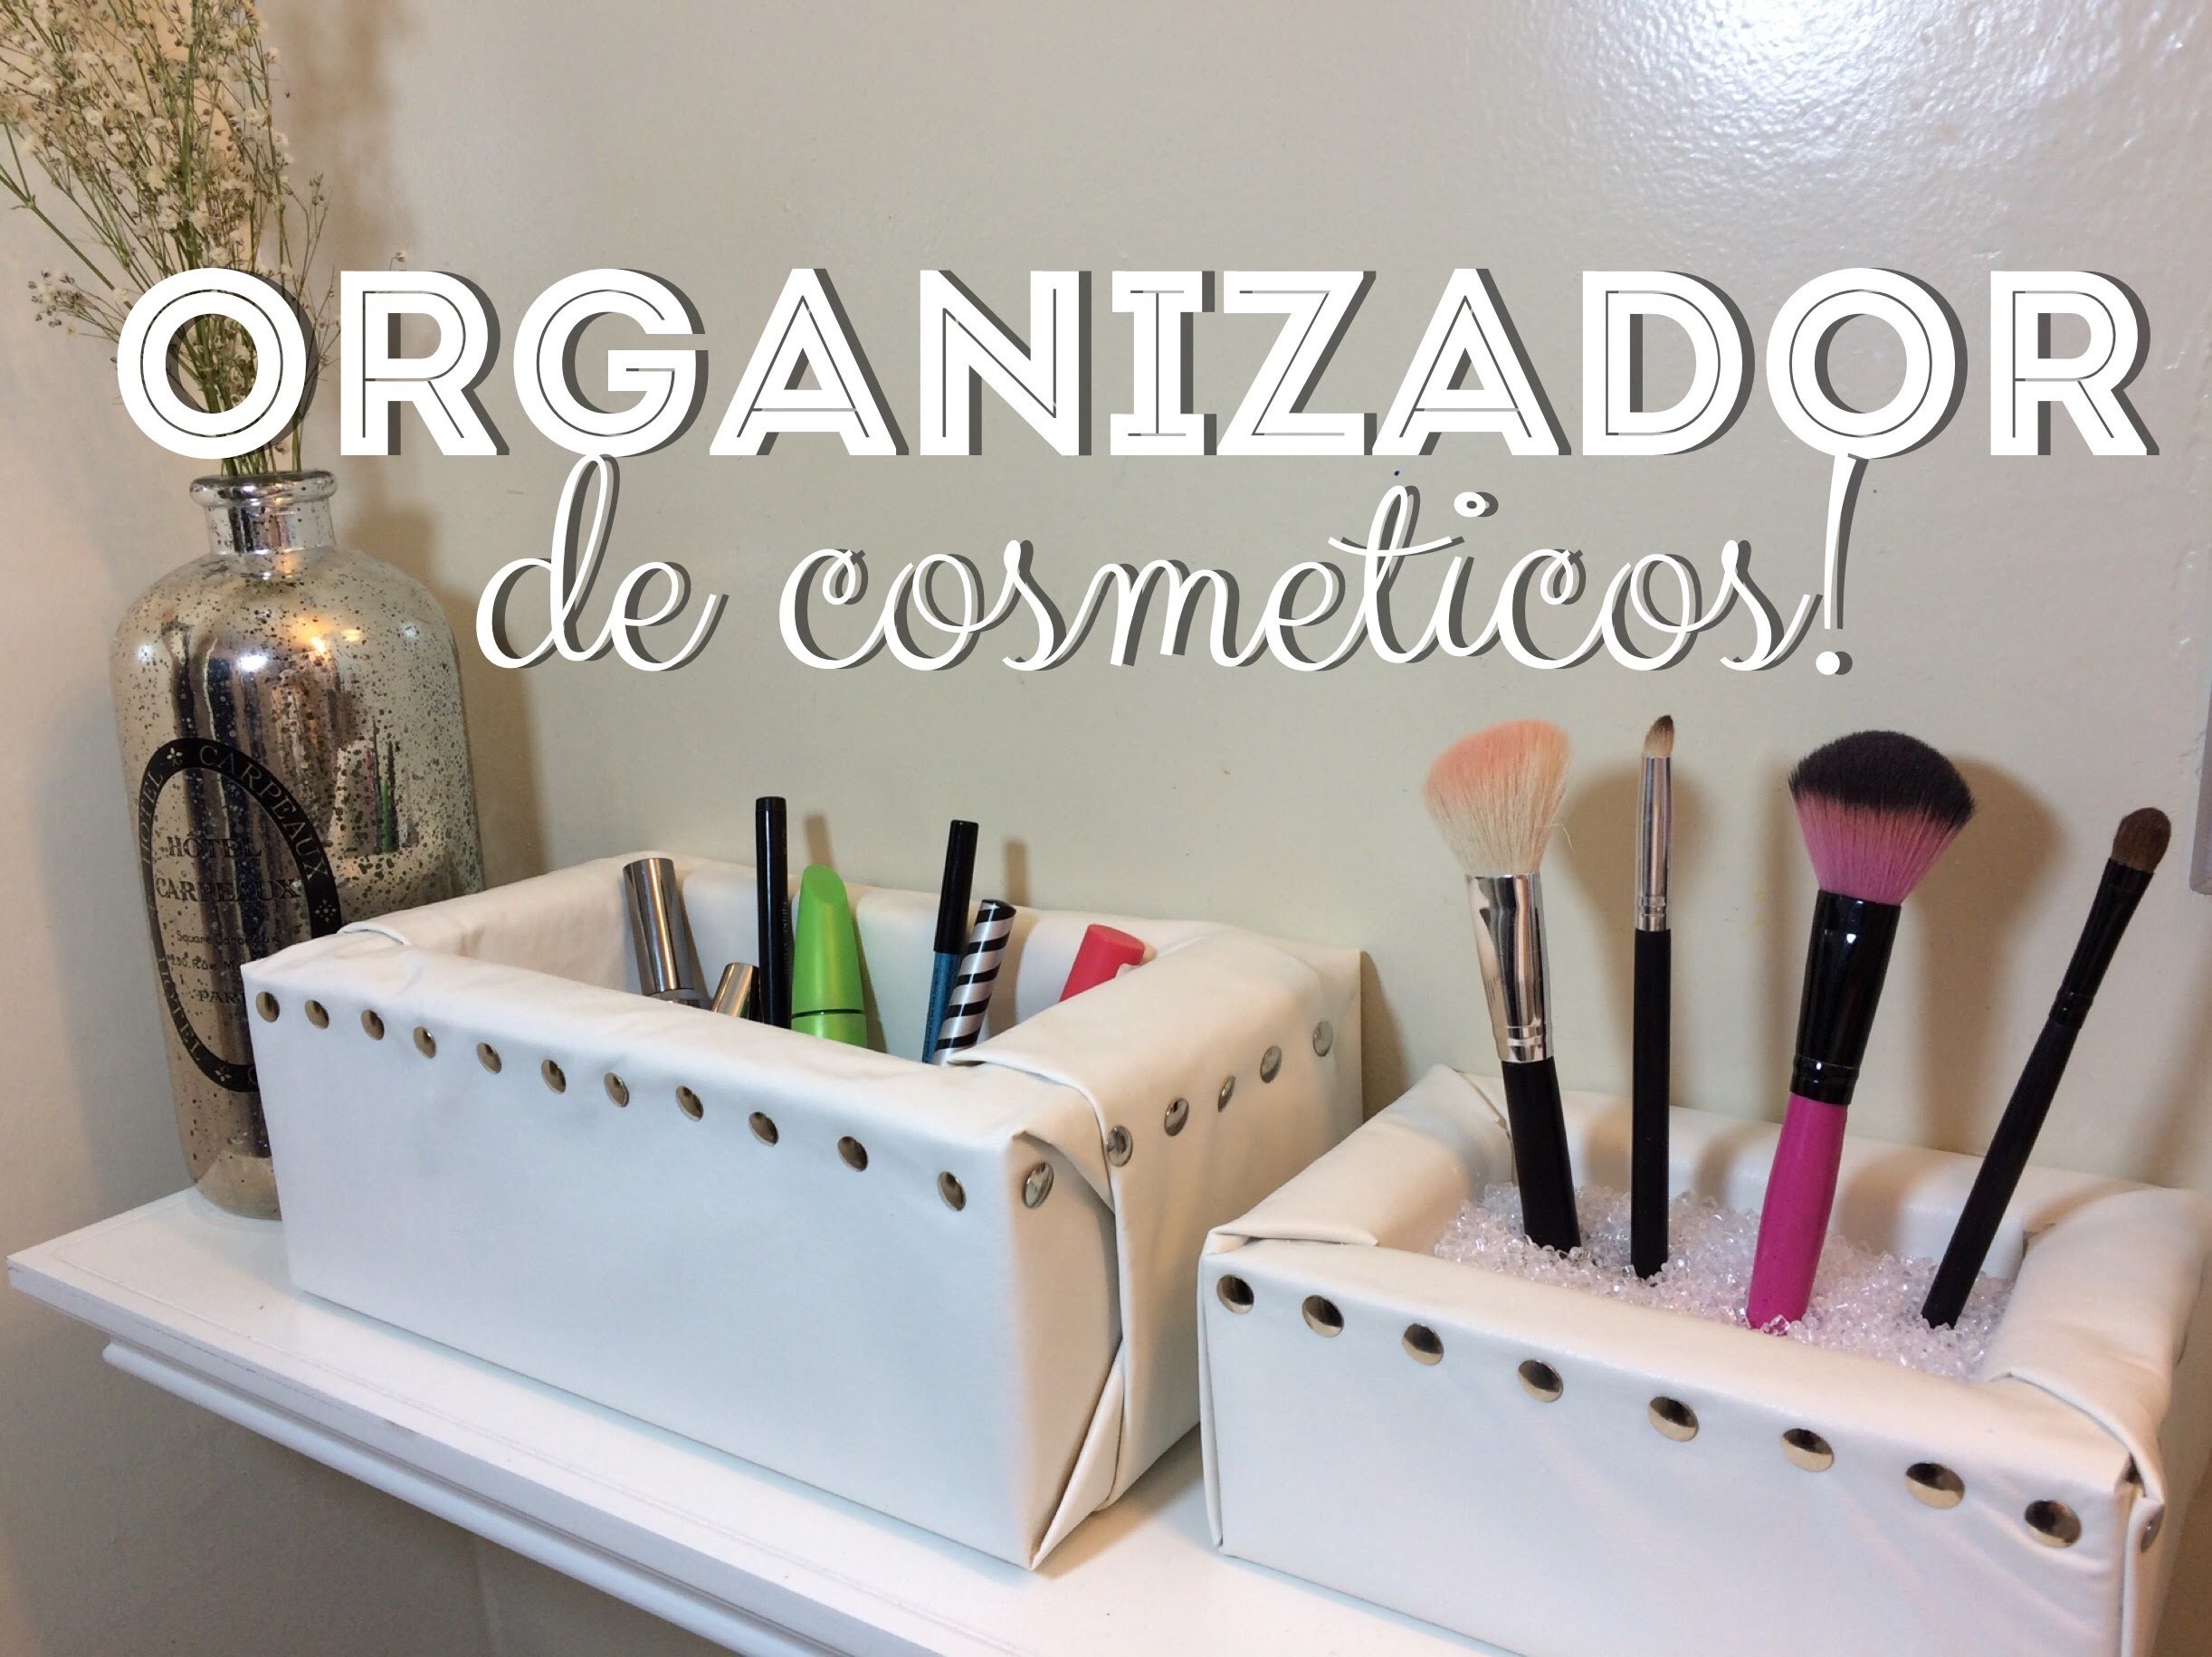 DIY-Organizador de Cosmeticos!